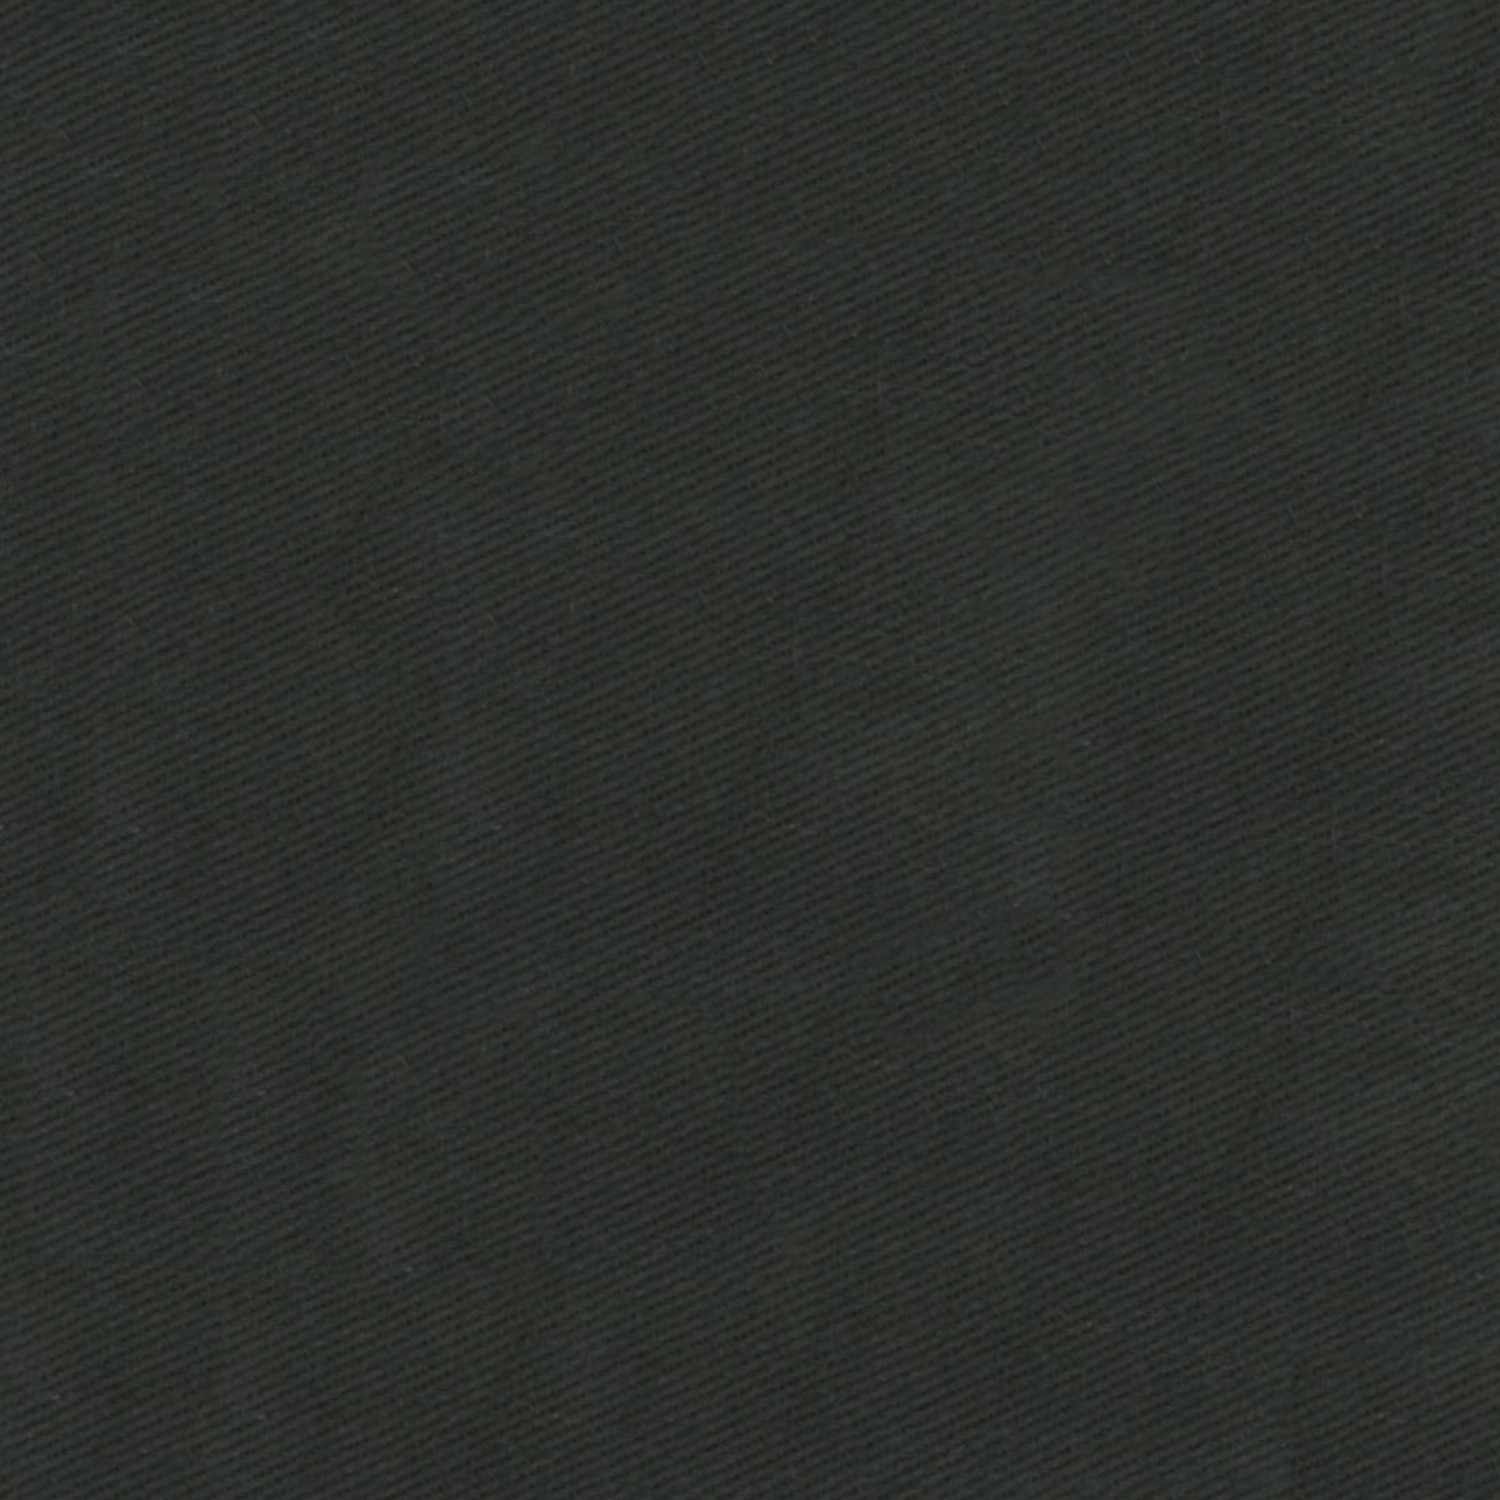 Milestone Twill Black Fabric 7oz - 60" Wide x Per Yard